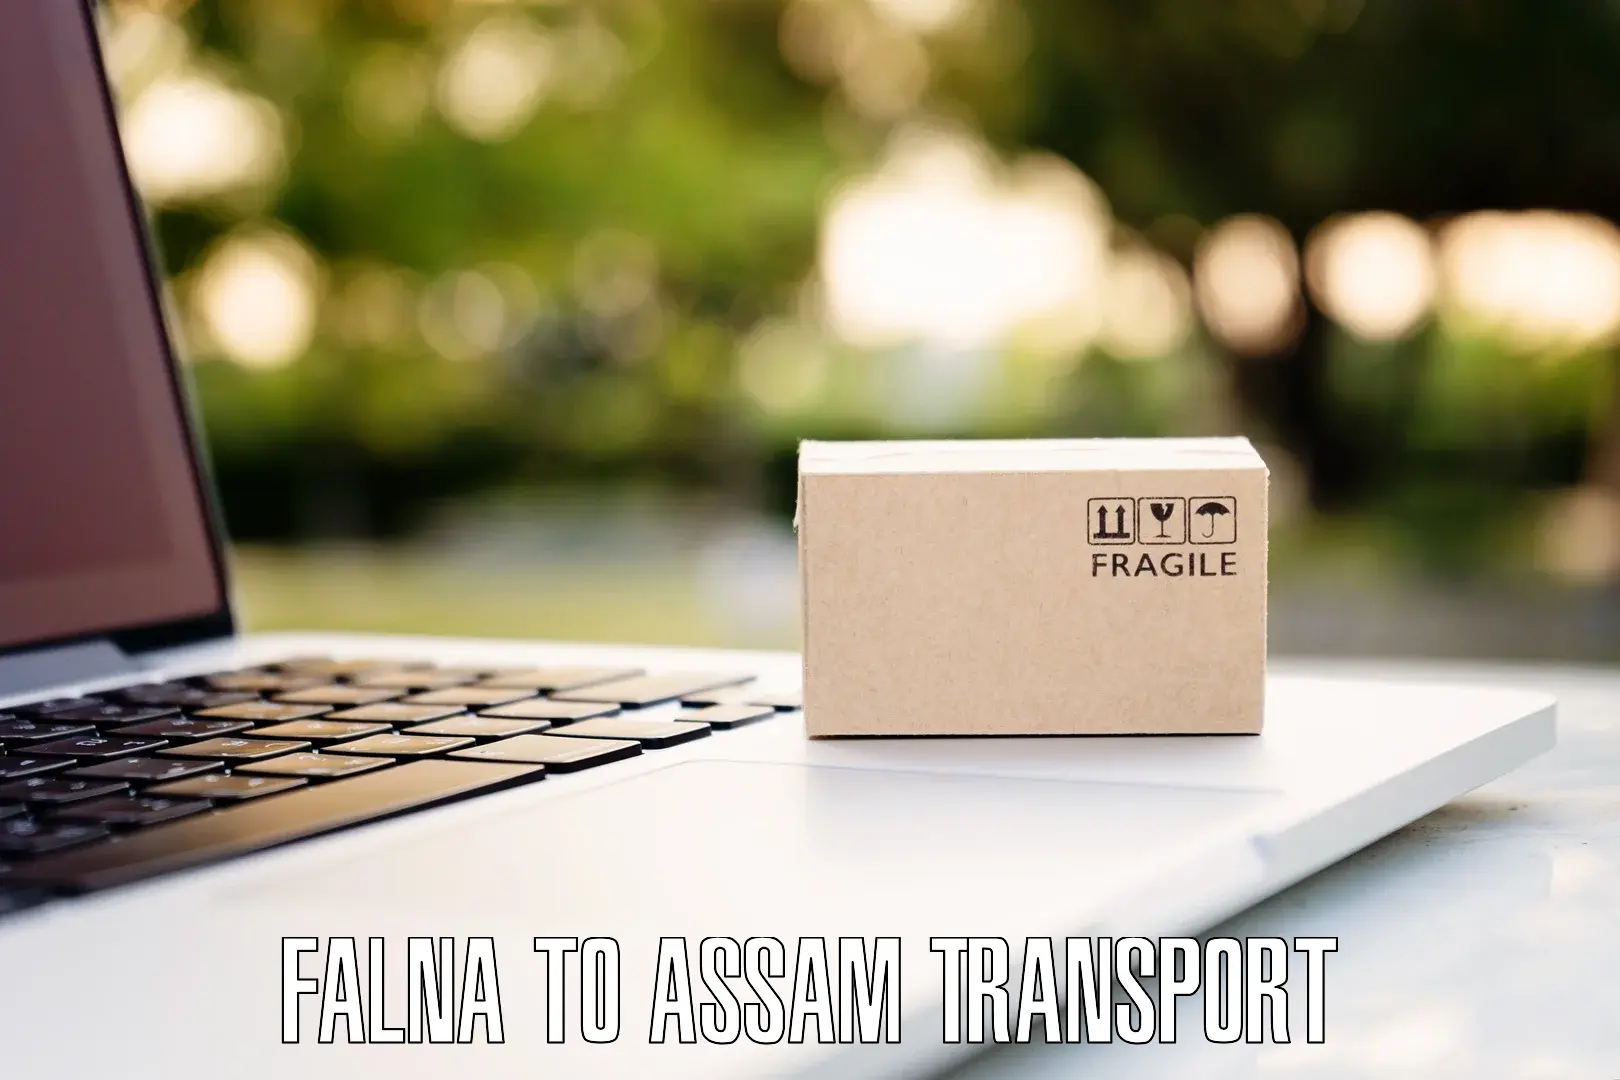 Express transport services Falna to Fekamari